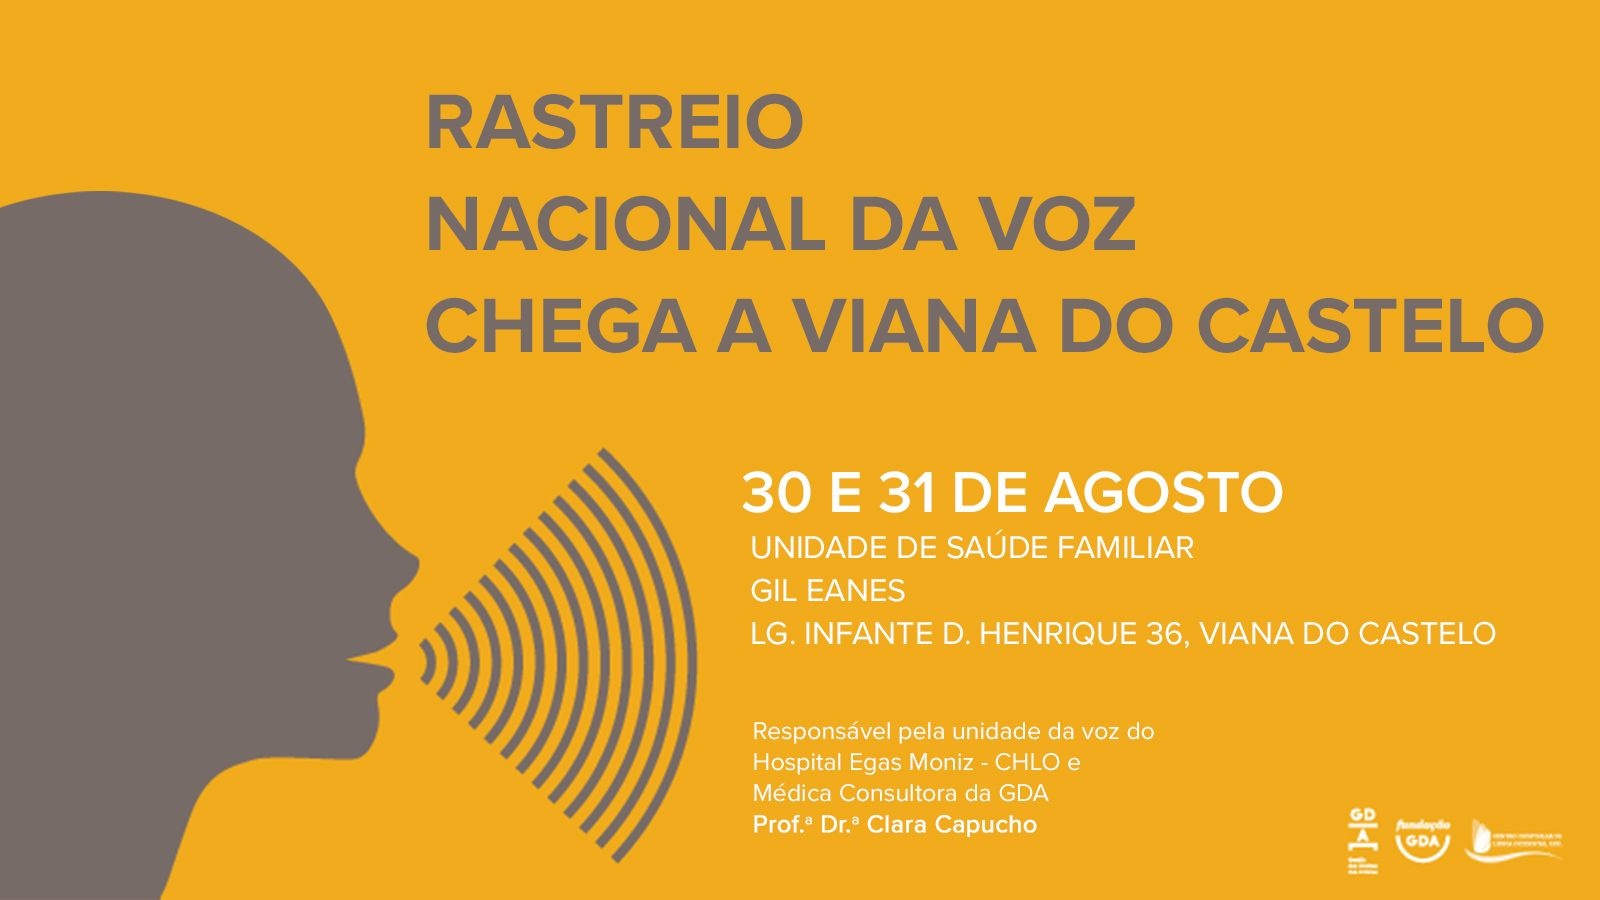 Viana do Castelo recebe rastreio nacional da voz artística realizado pela GDA